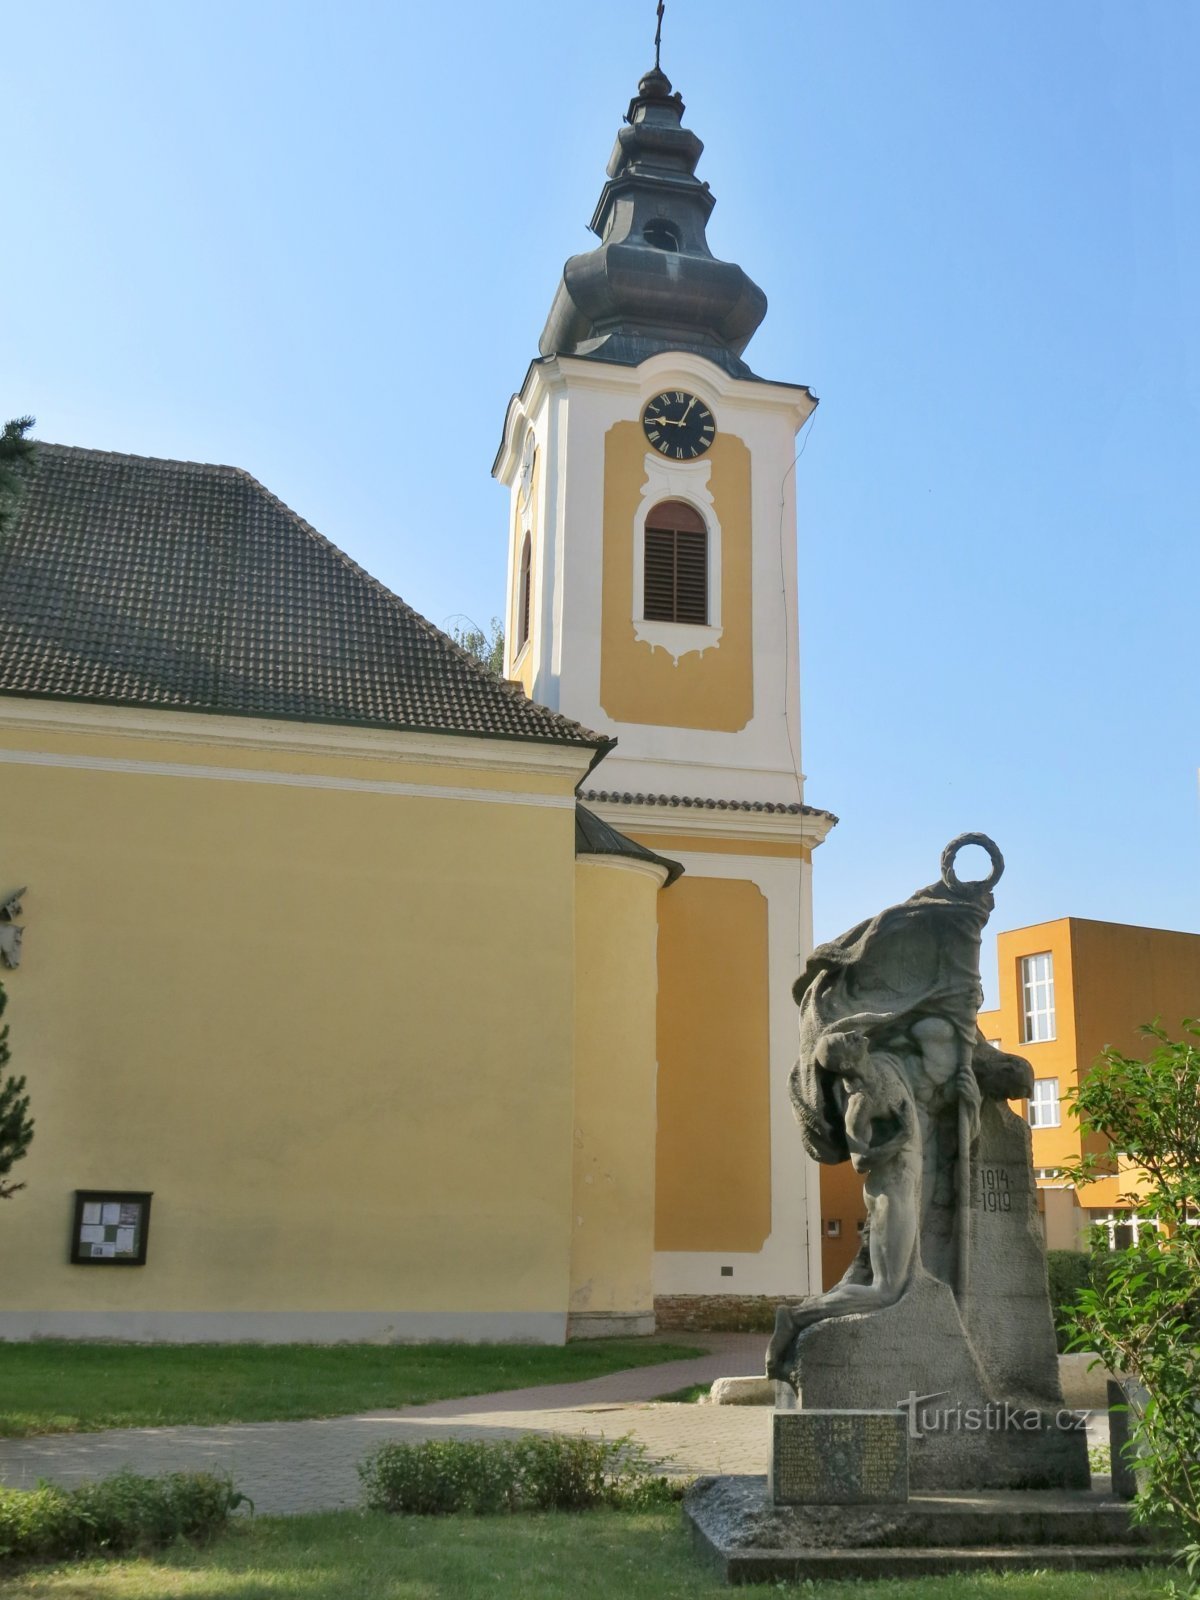 Planá nad Lužnicí - église de St. Venceslas